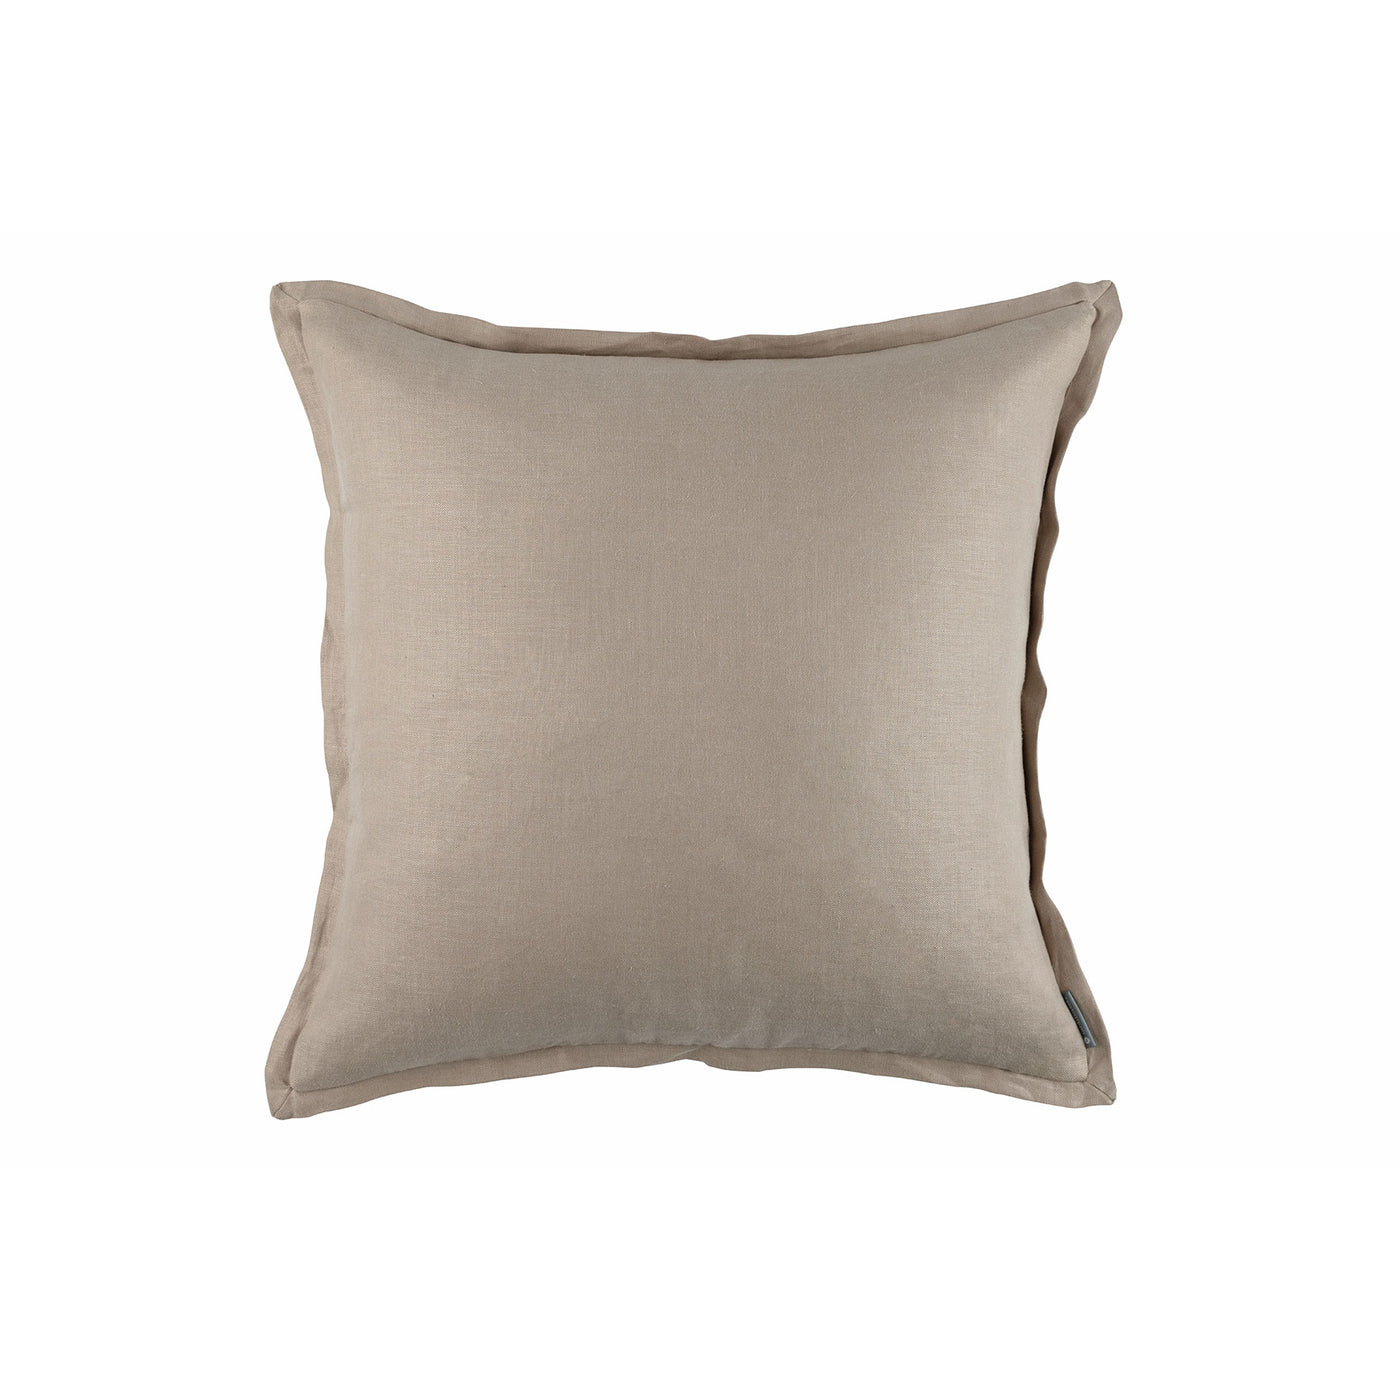 Terra Trench Coat European Pillow 26x26